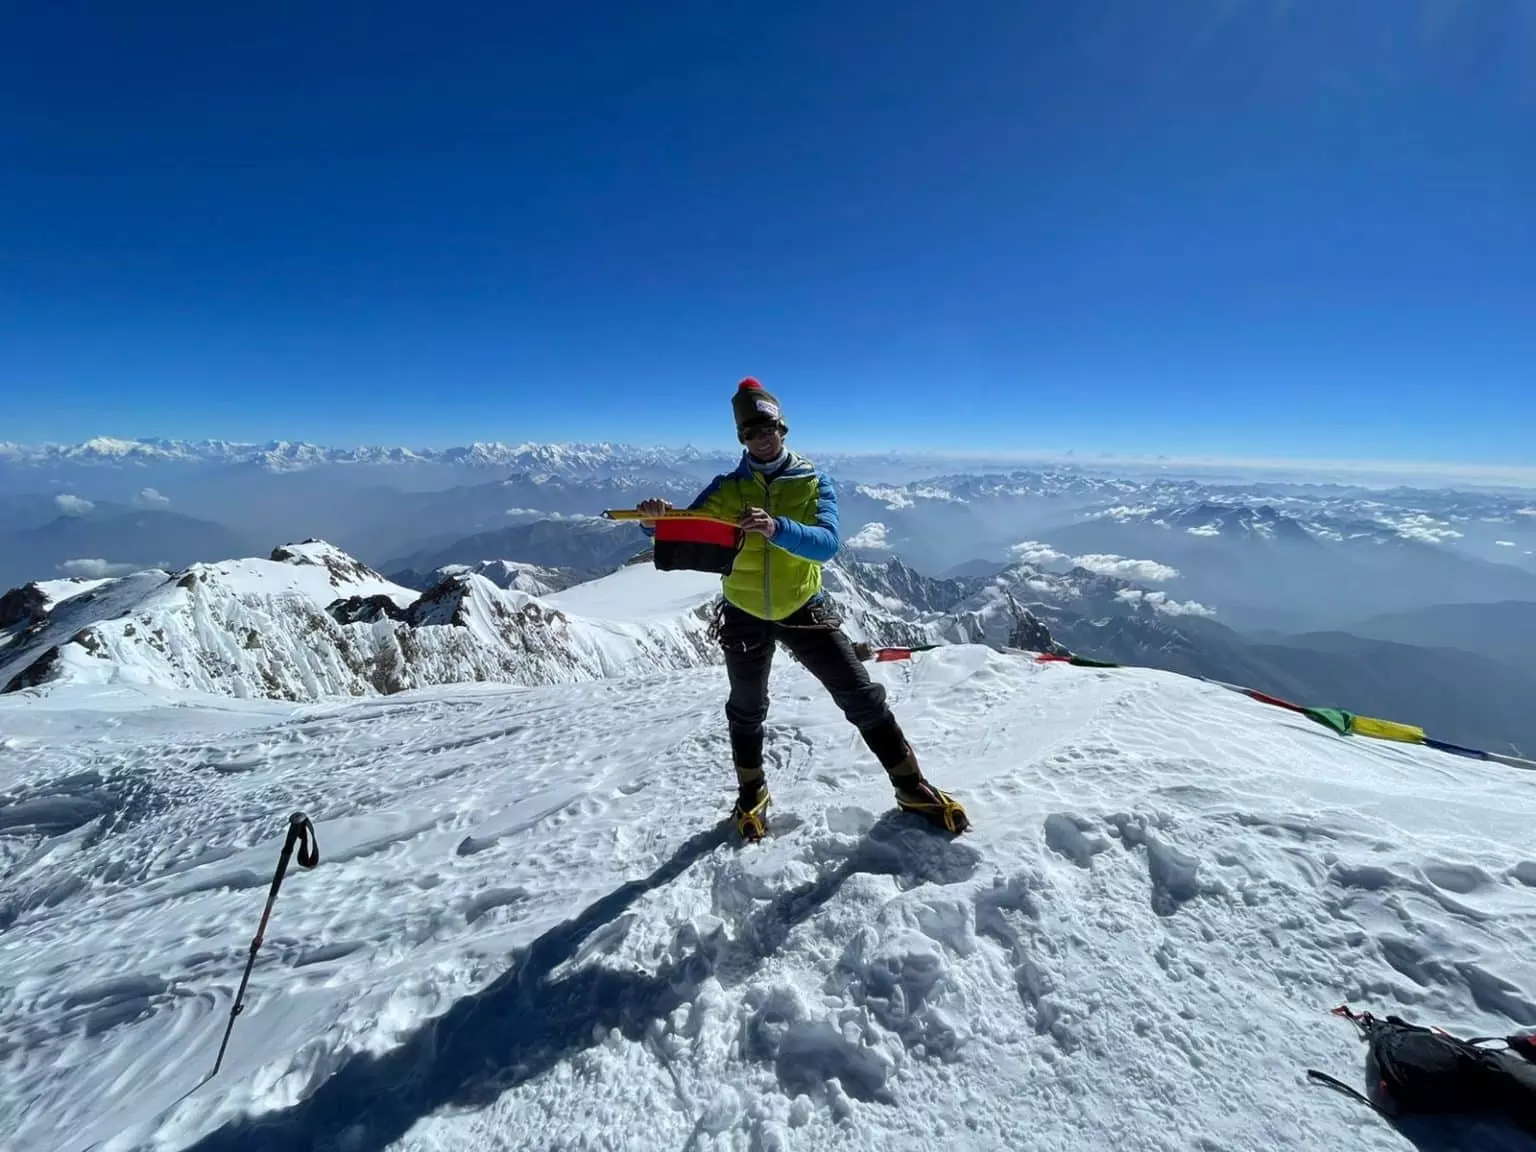  Франсуа Каззанеллі (François Cazzanelli) на вершині восьмитисячника Нангапарбат (Nanga Parbat, 8126 метрів). Фото François Cazzanelli